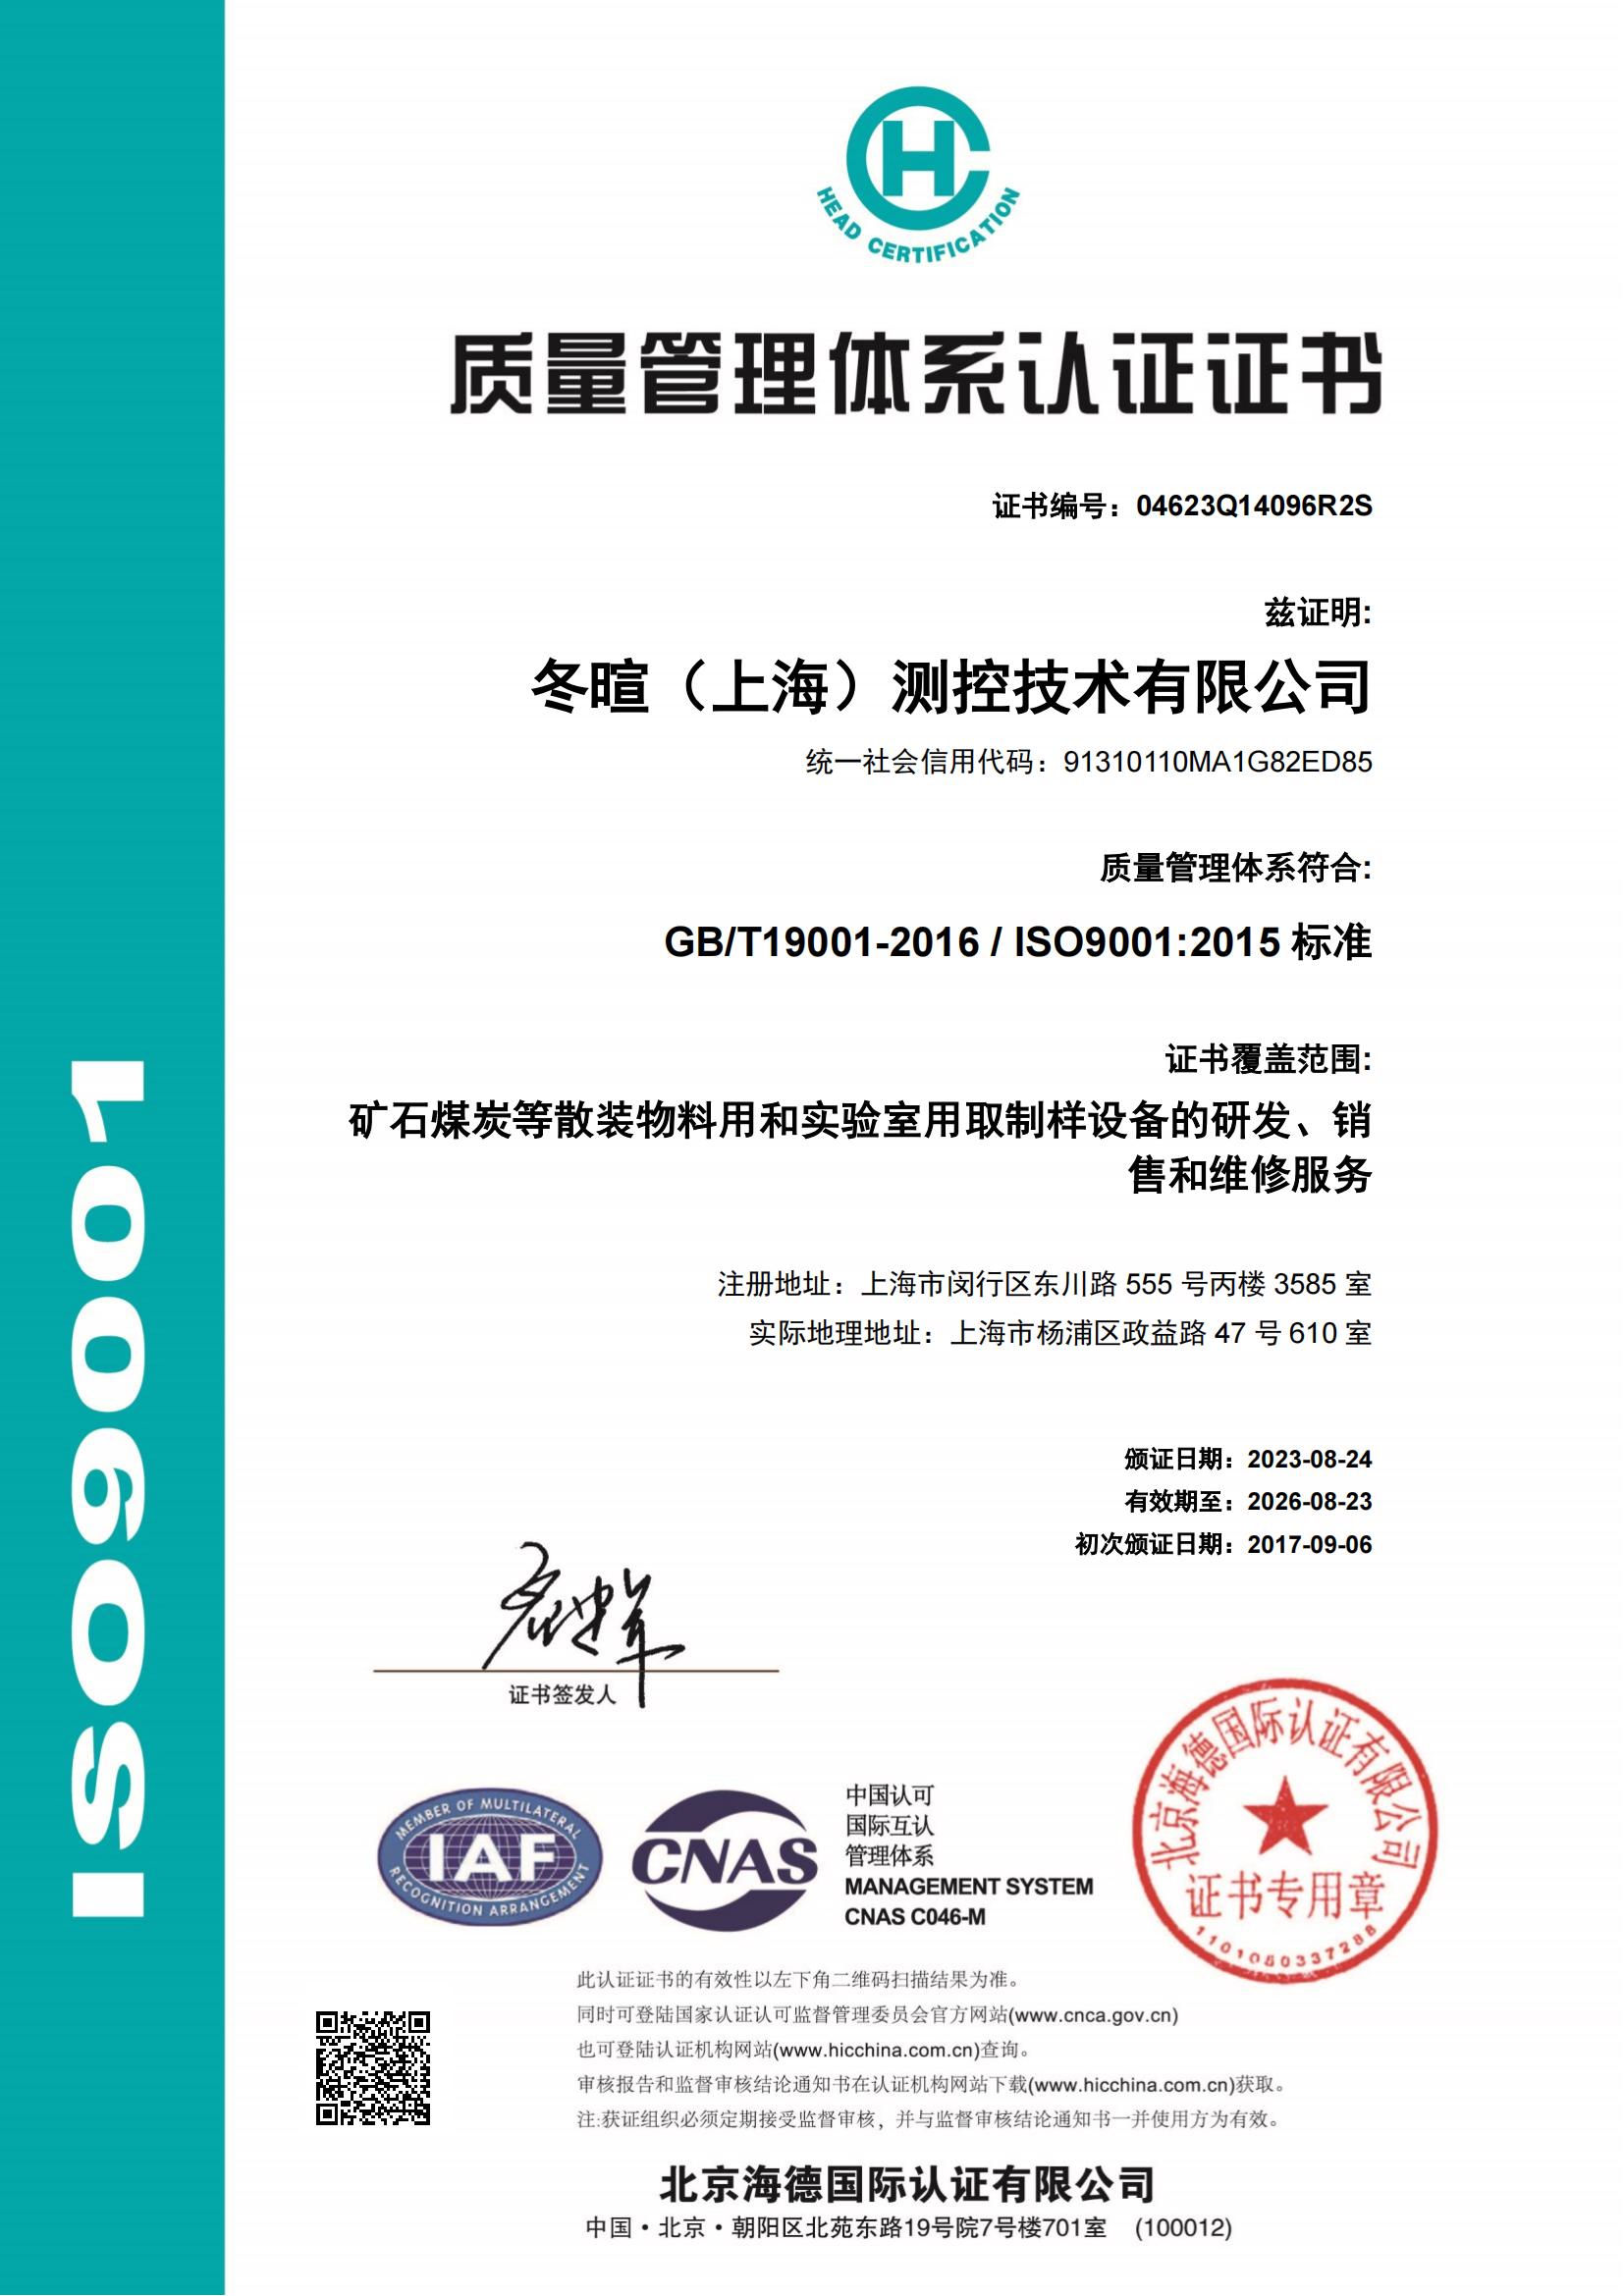 冬暄测控-质量管理体系认证证书--中文